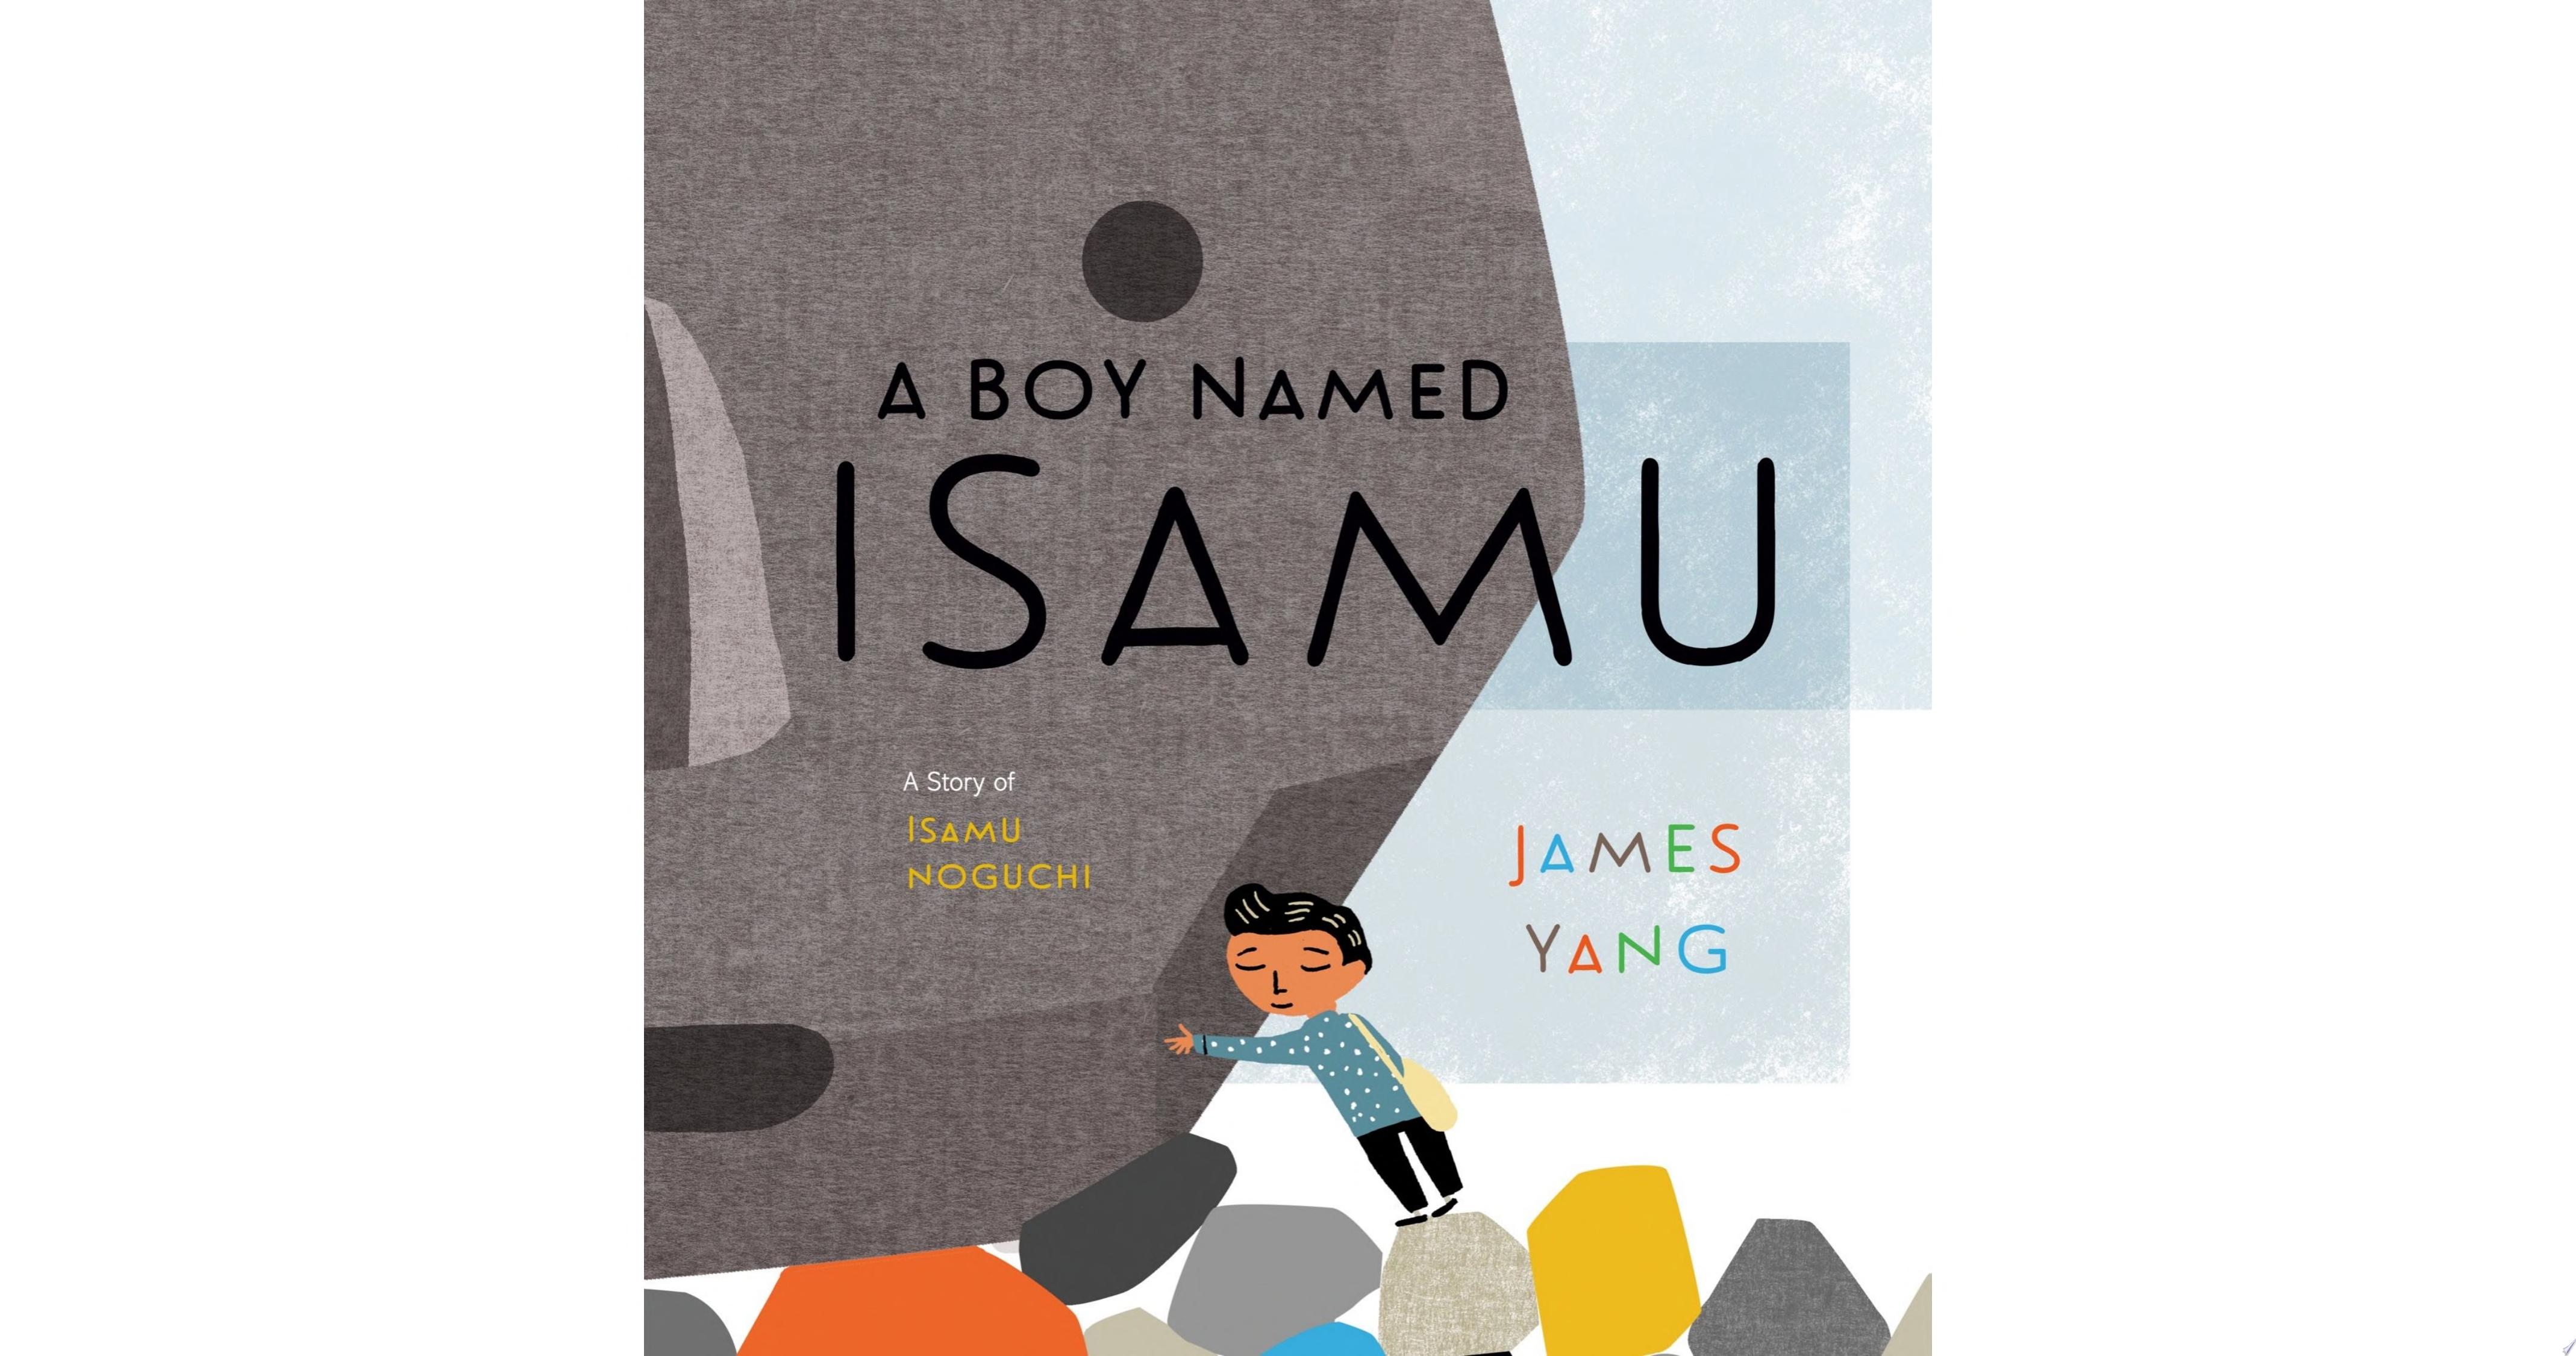 Image for "A Boy Named Isamu"